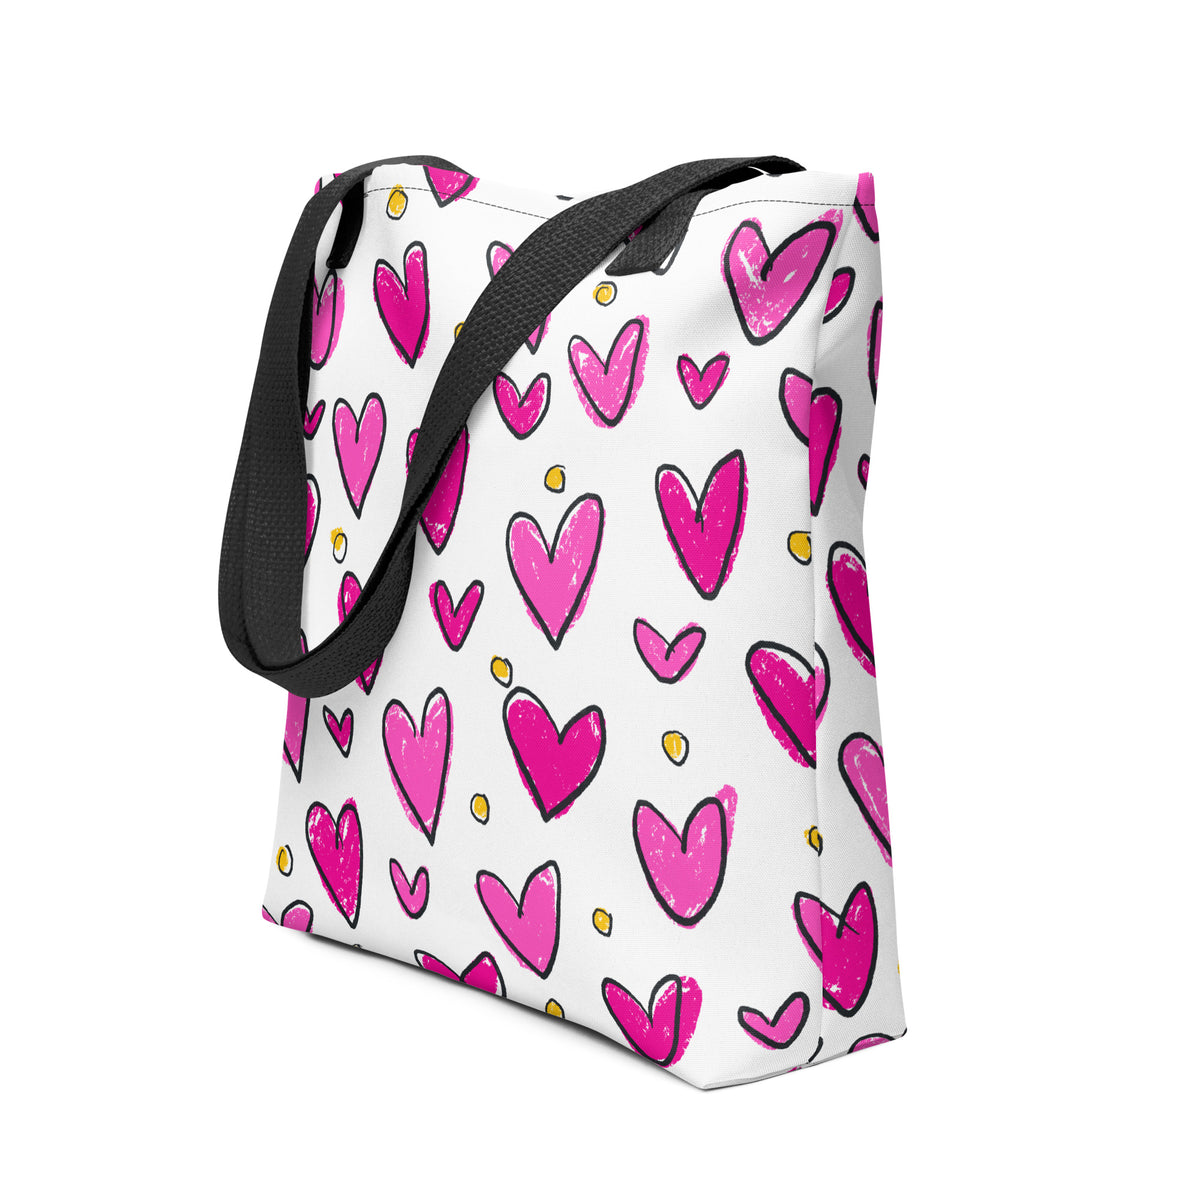 PINK SKETCHY HEARTS Tote bag, BOHO Bag, Shopping Bag, Beach Bag